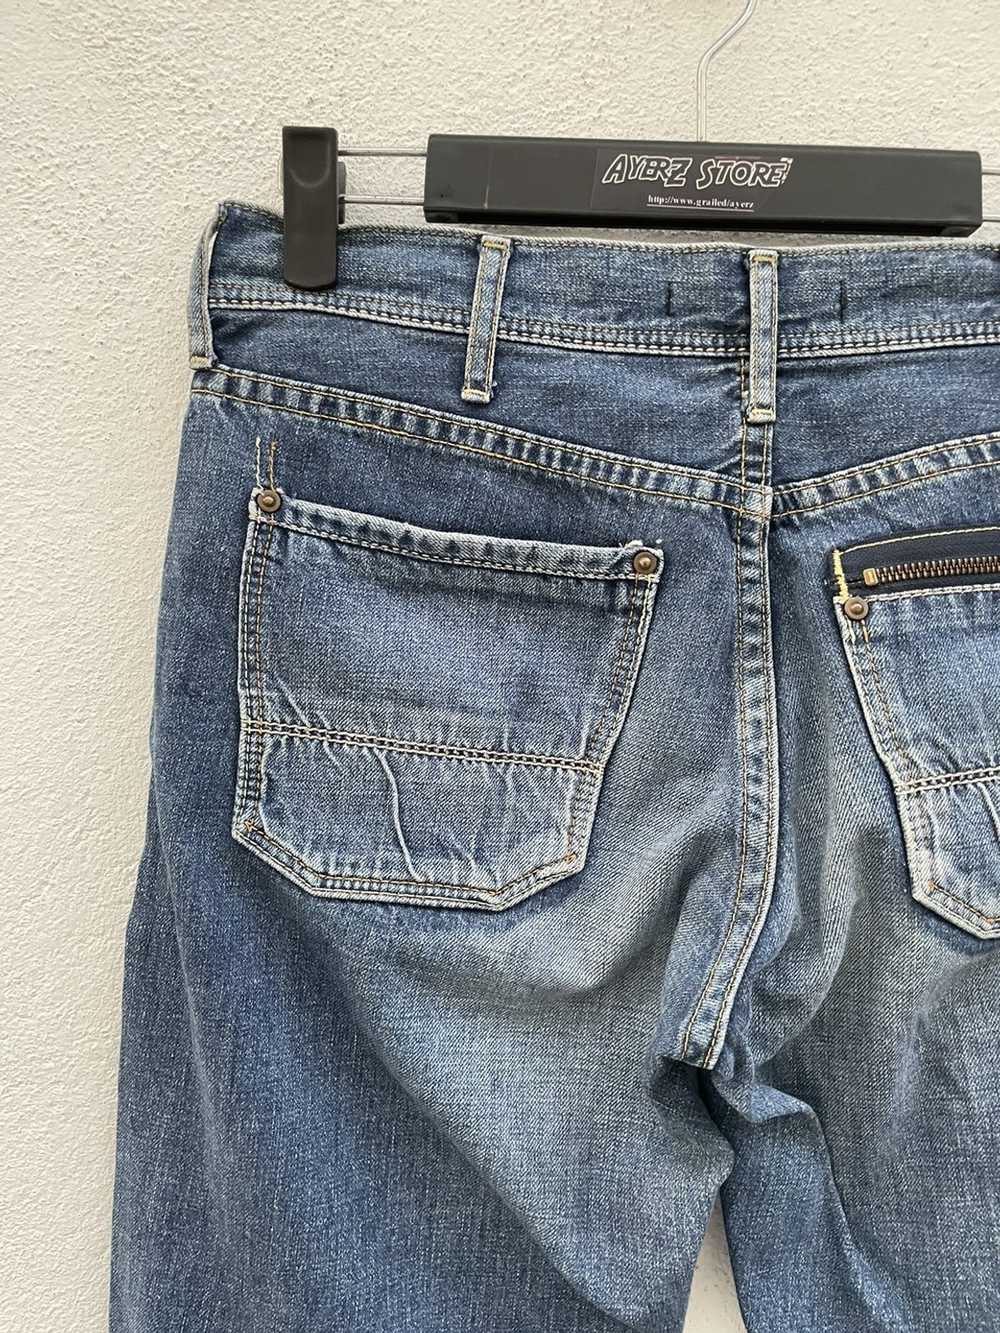 Japanese Brand × John Bull John Bull Jeans - image 8